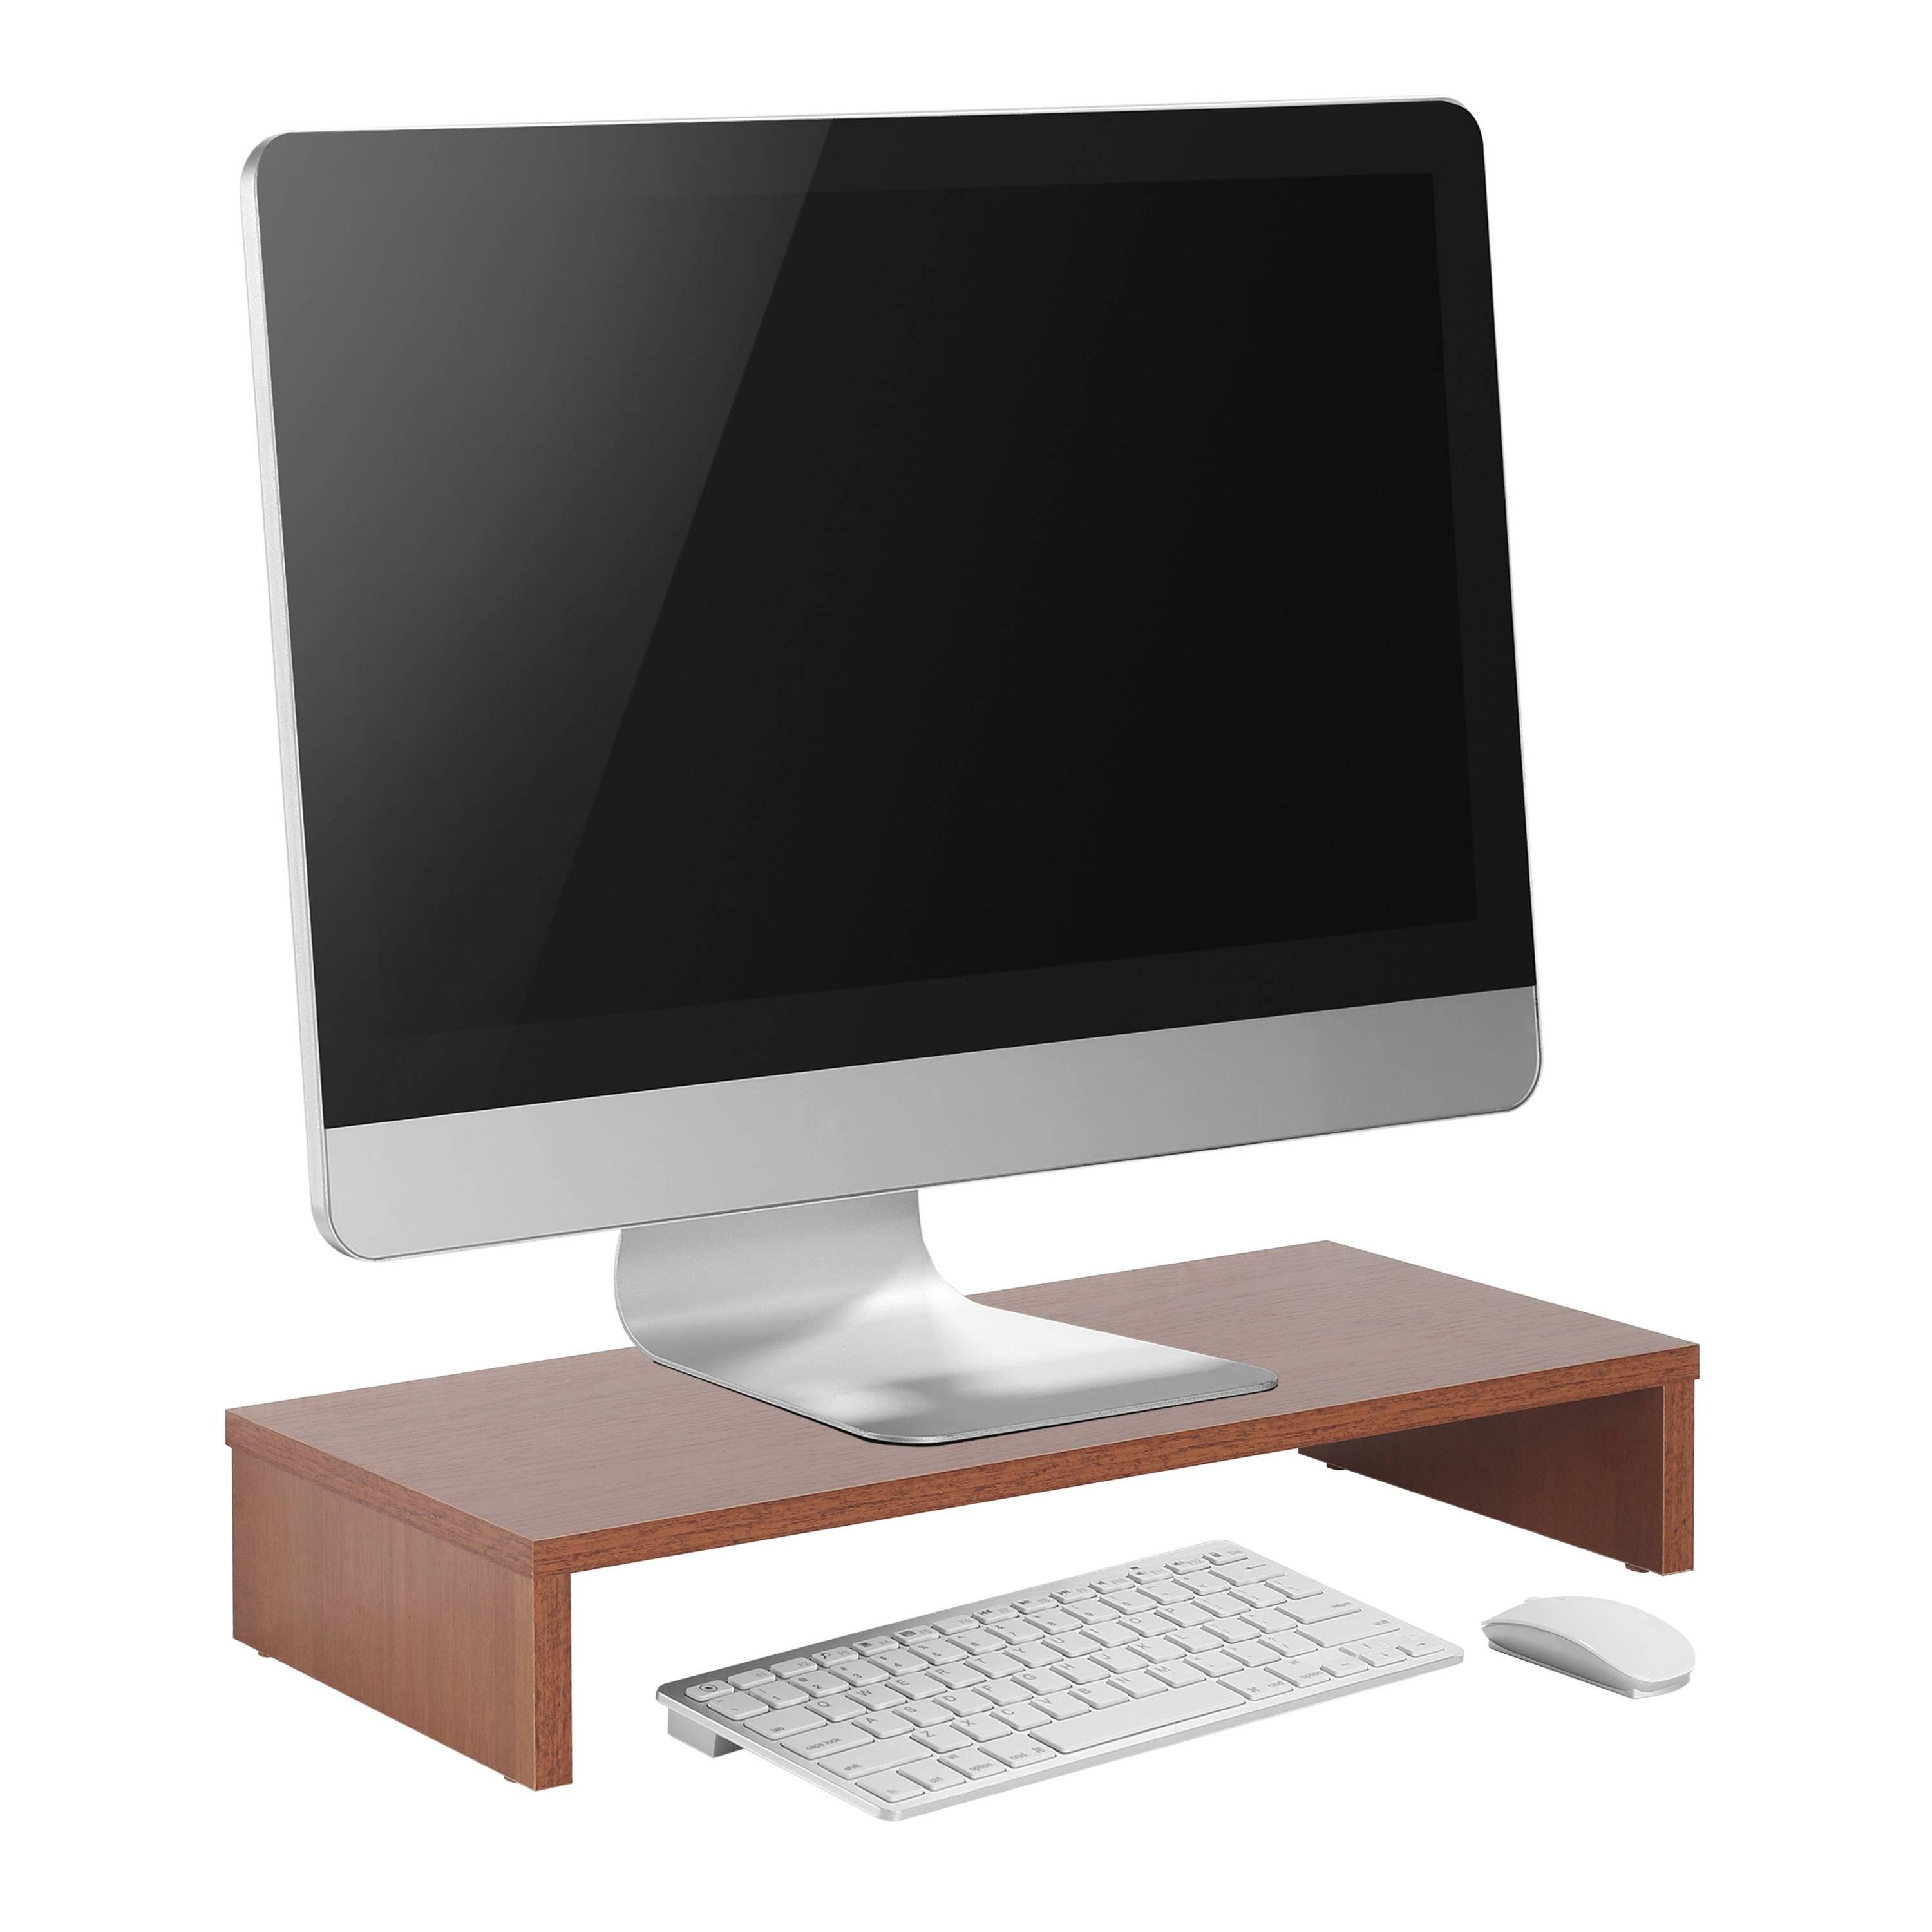 Bildschirm Aufsatz Eiche-Rustikal Monitorerhöhung Schreibtischaufsatz FS0113-ER, RICOO Tisch Monitorständer Schreibtisch